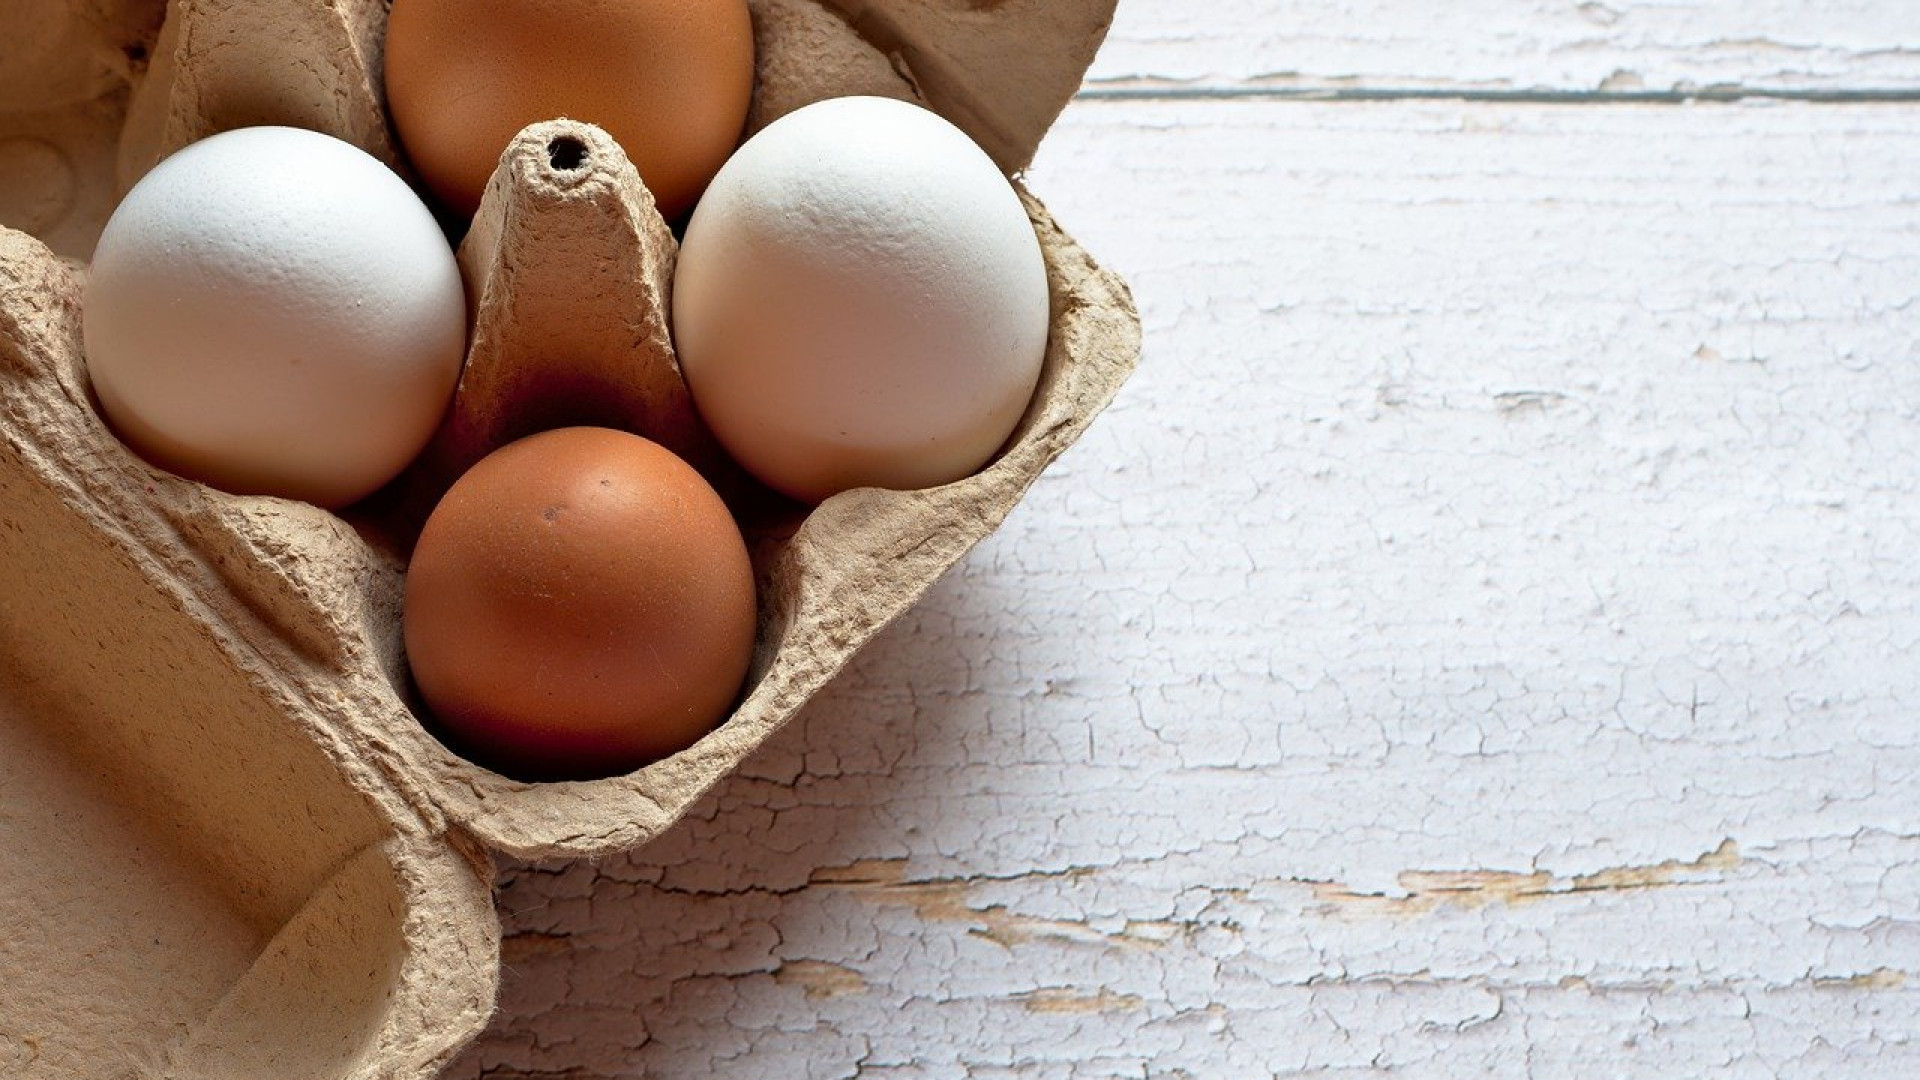 Comment bien choisir des œufs de qualité ?